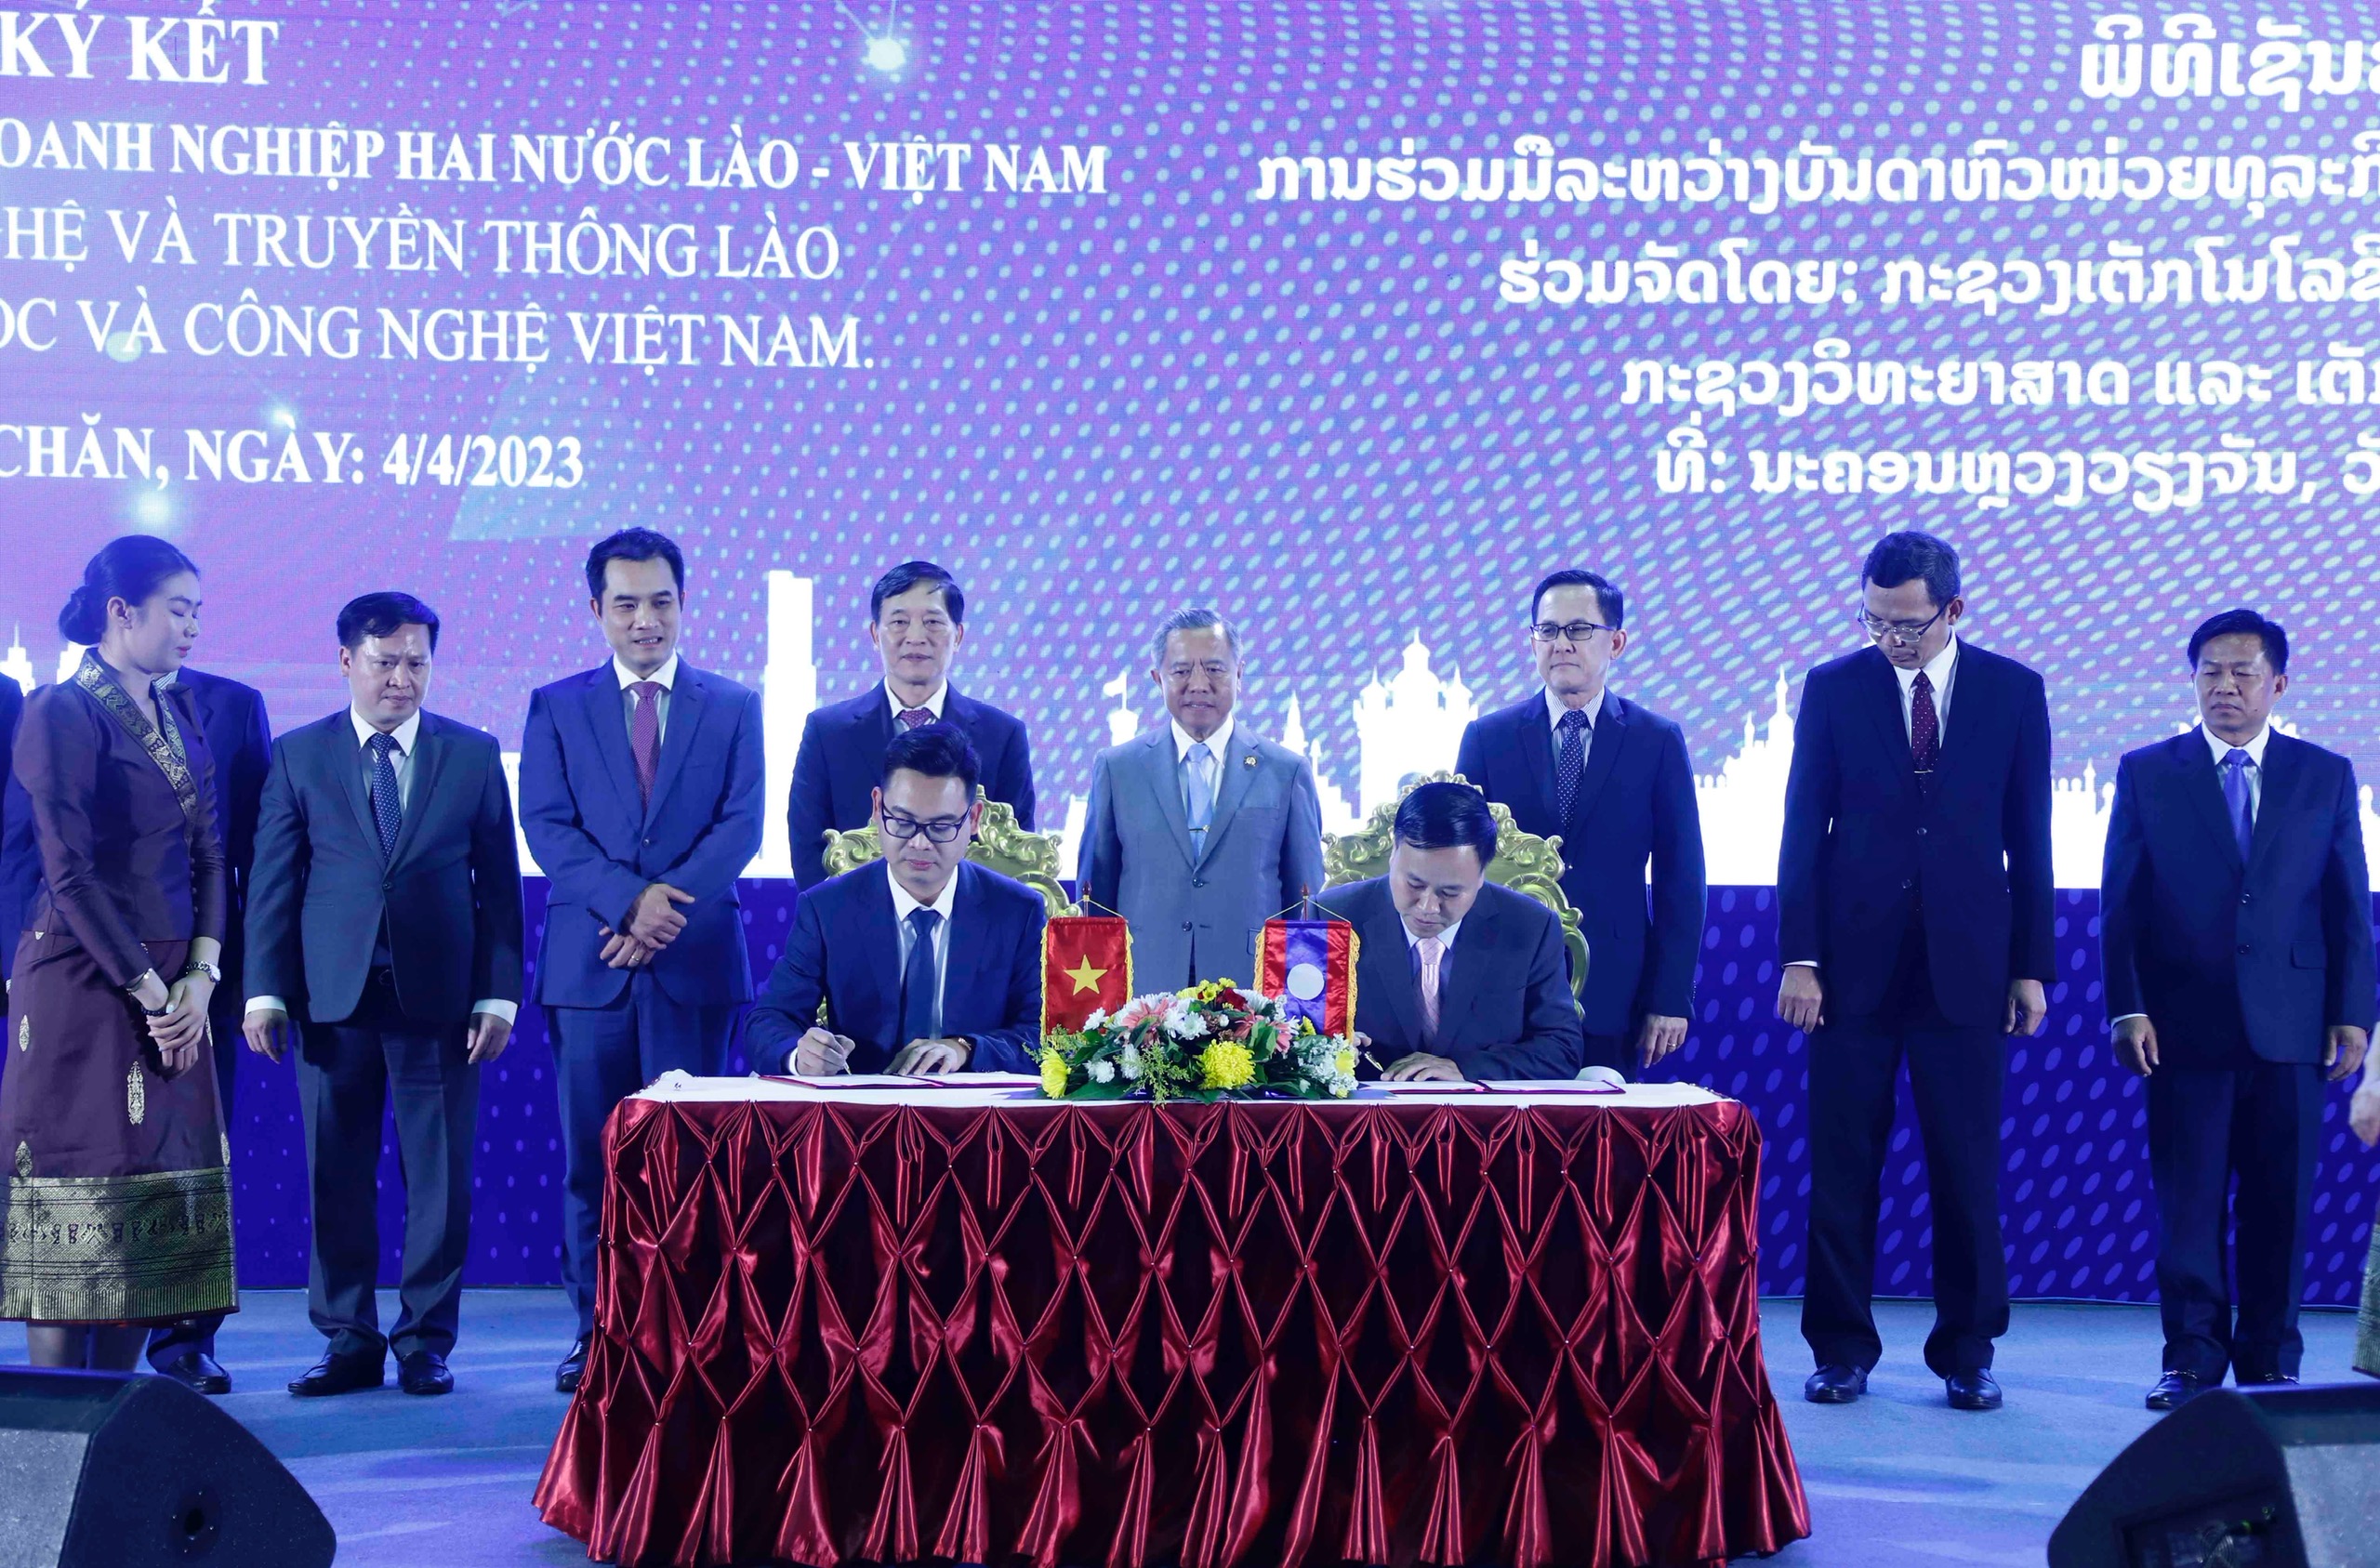 Vinaseed mở rộng dịch vụ cung cấp giống cây trồng tại Tech - Innovation Vietnam - Laos 2023